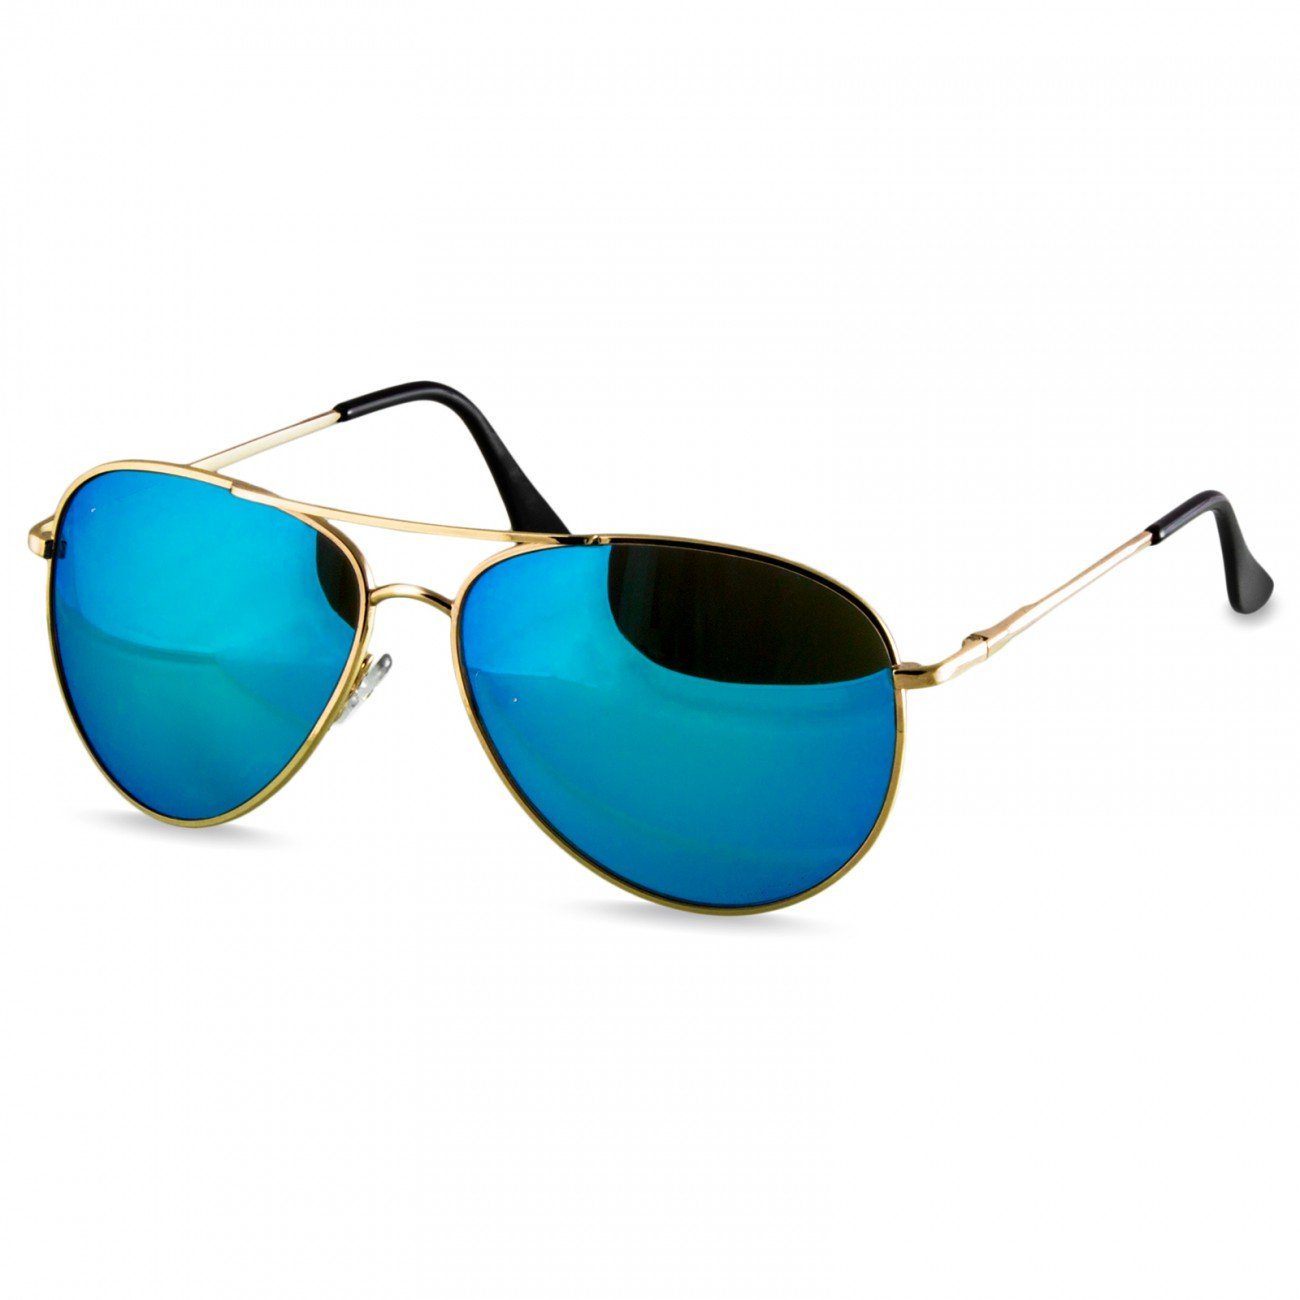 Caspar Sonnenbrille SG013 klassische Unisex Retro Pilotenbrille gold / hellblau verspiegelt